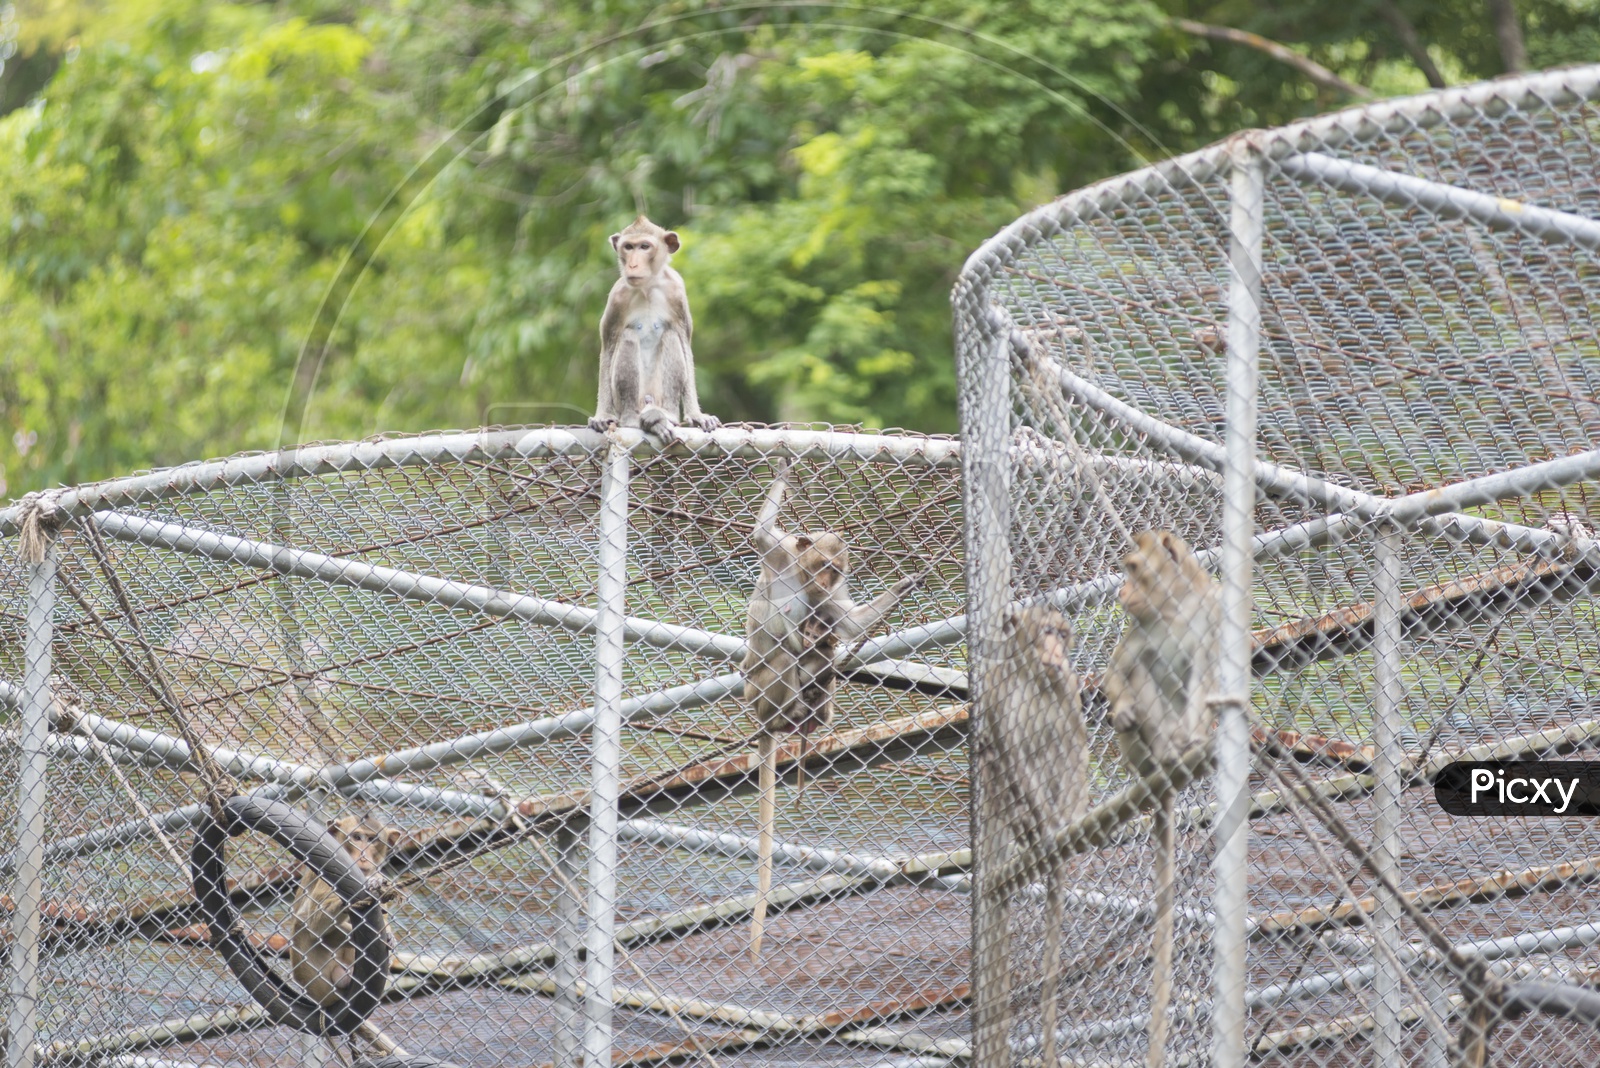 Monkeys in Cage, Thailand